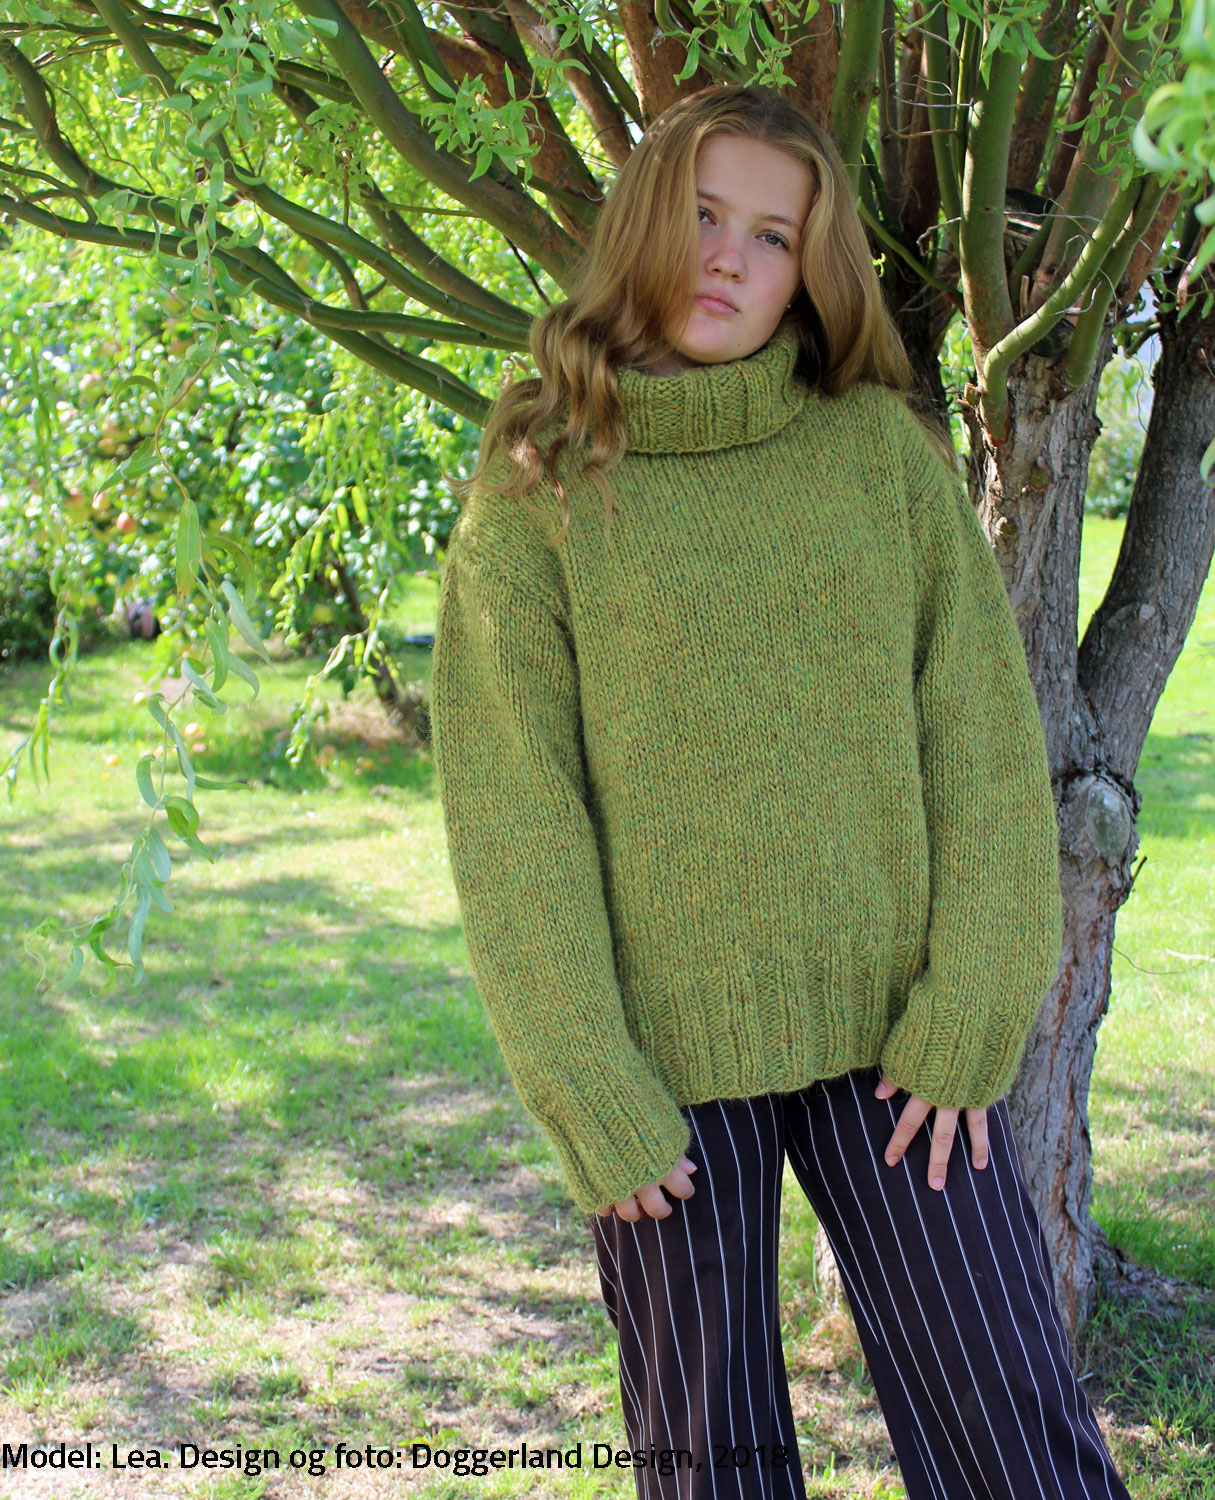 Strikkekit - garn opskrift til smart rullekravesweater i islandsk • Blog om strikdesign og opskrifter Marianne Porsborg